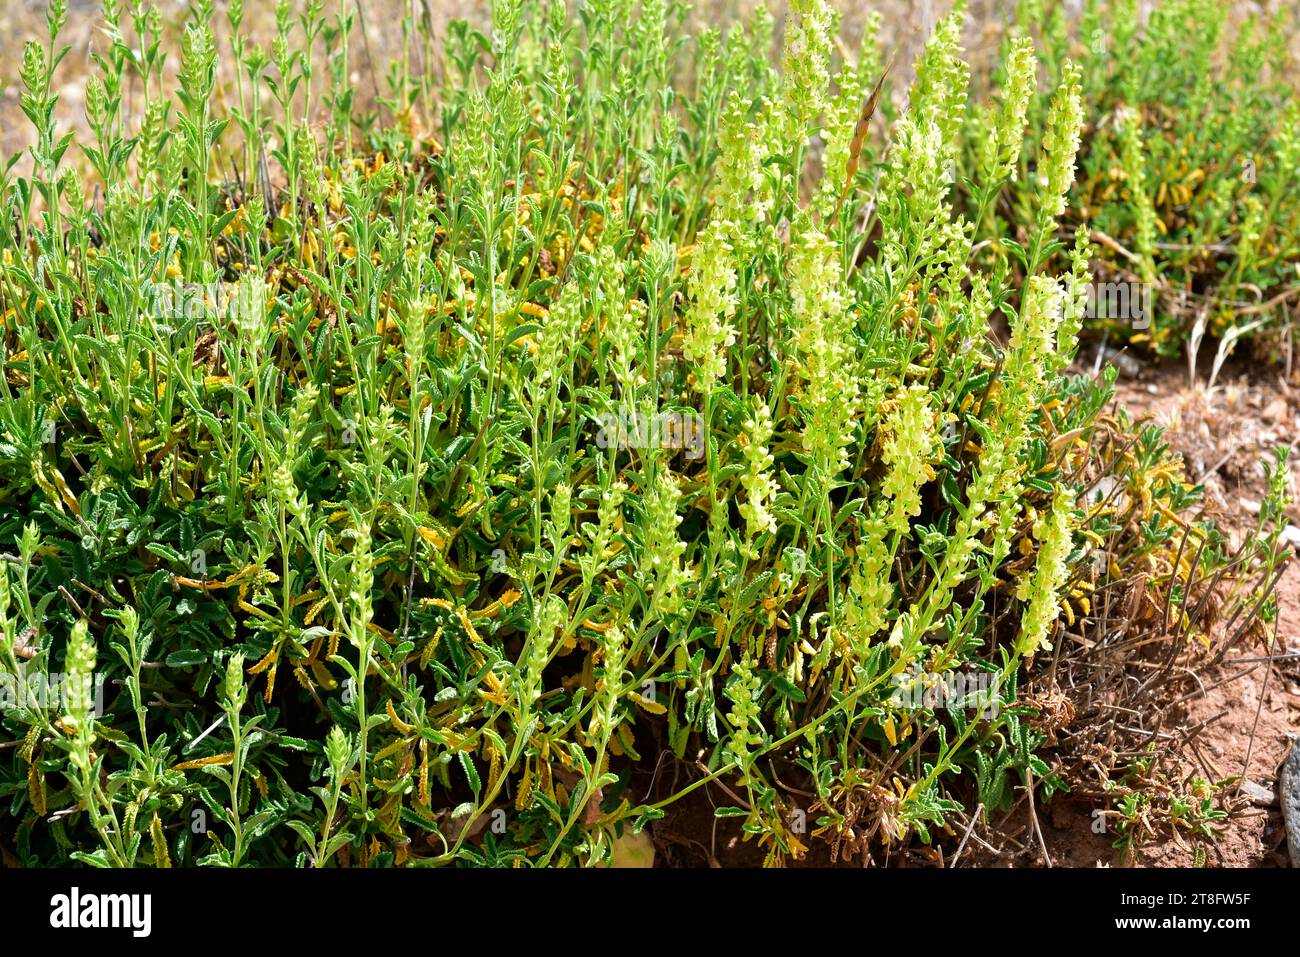 Le Teucrium oxylepis est une plante vivace originaire du centre et du sud de l'Espagne. Cette photo a été prise en Sierra Nevada, Grenade, Andalousie, Espagne. Banque D'Images